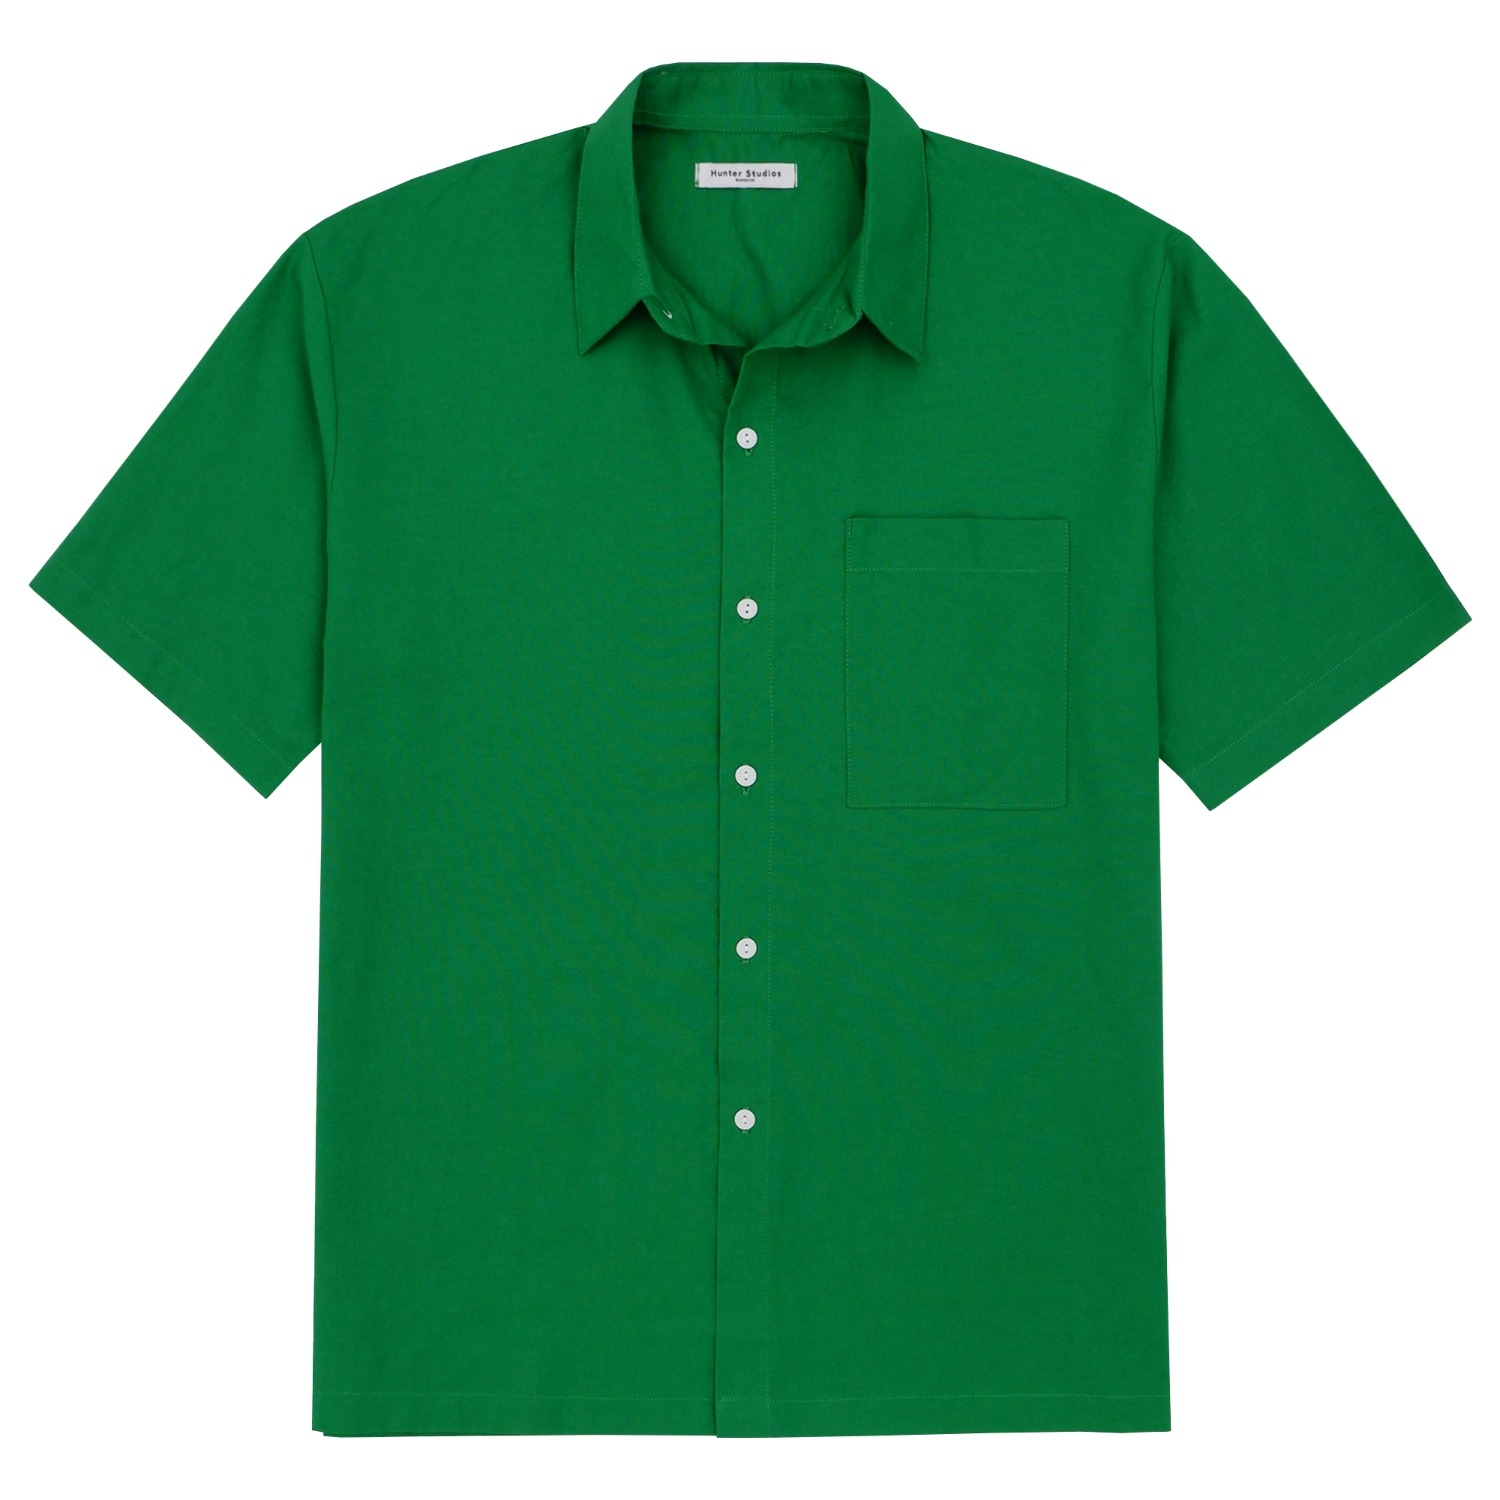 Fainly Shirt (Green)